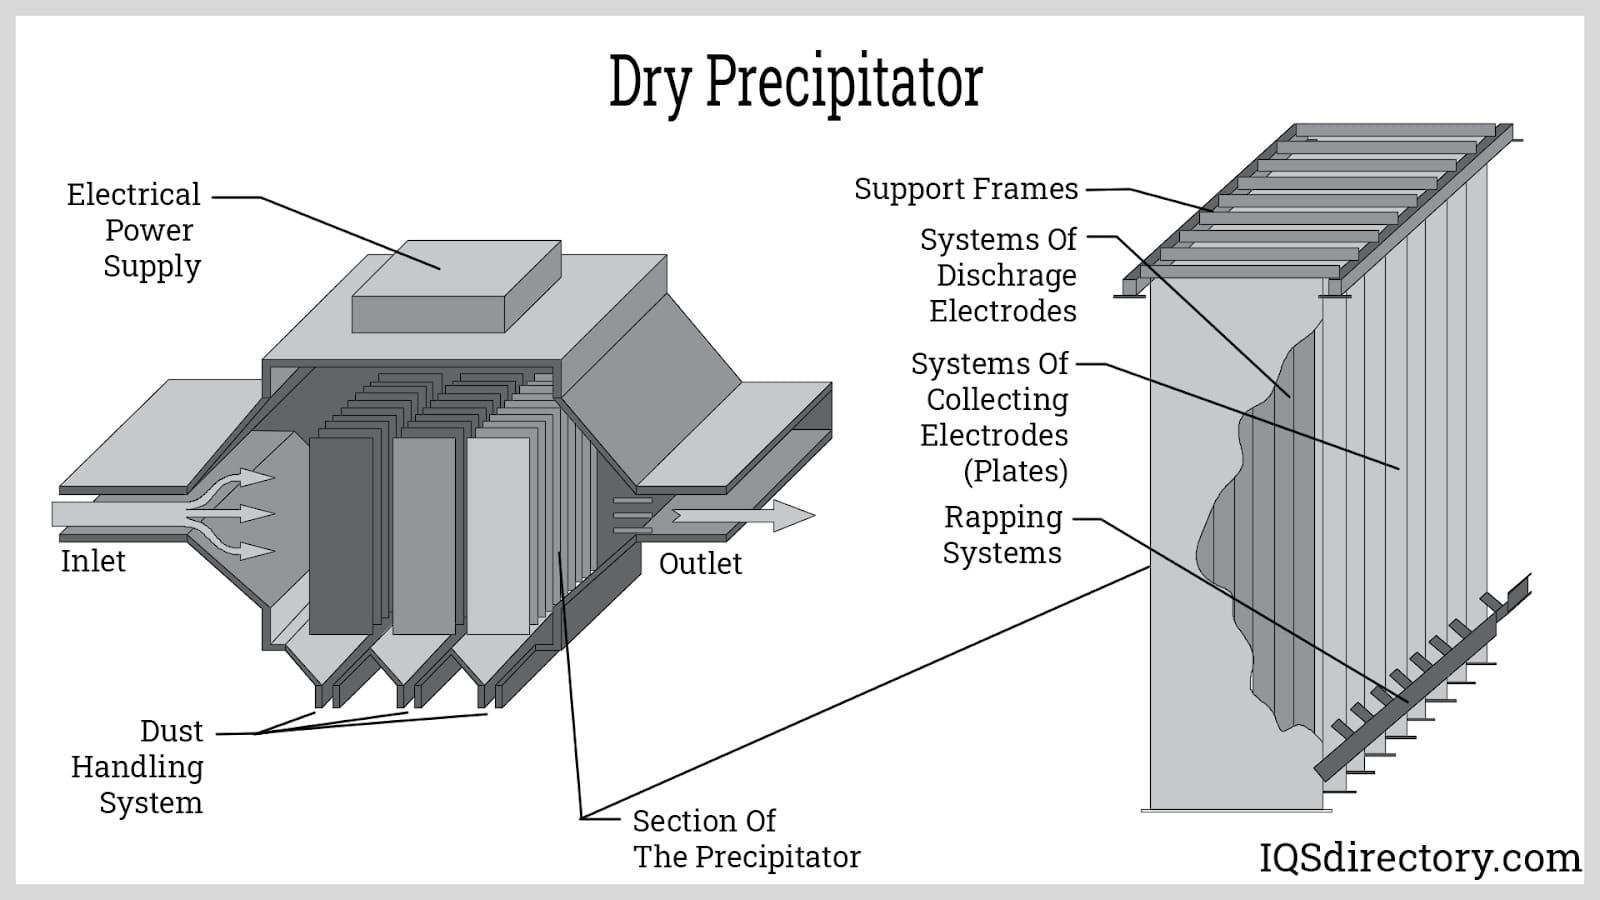 Dry Precipitator